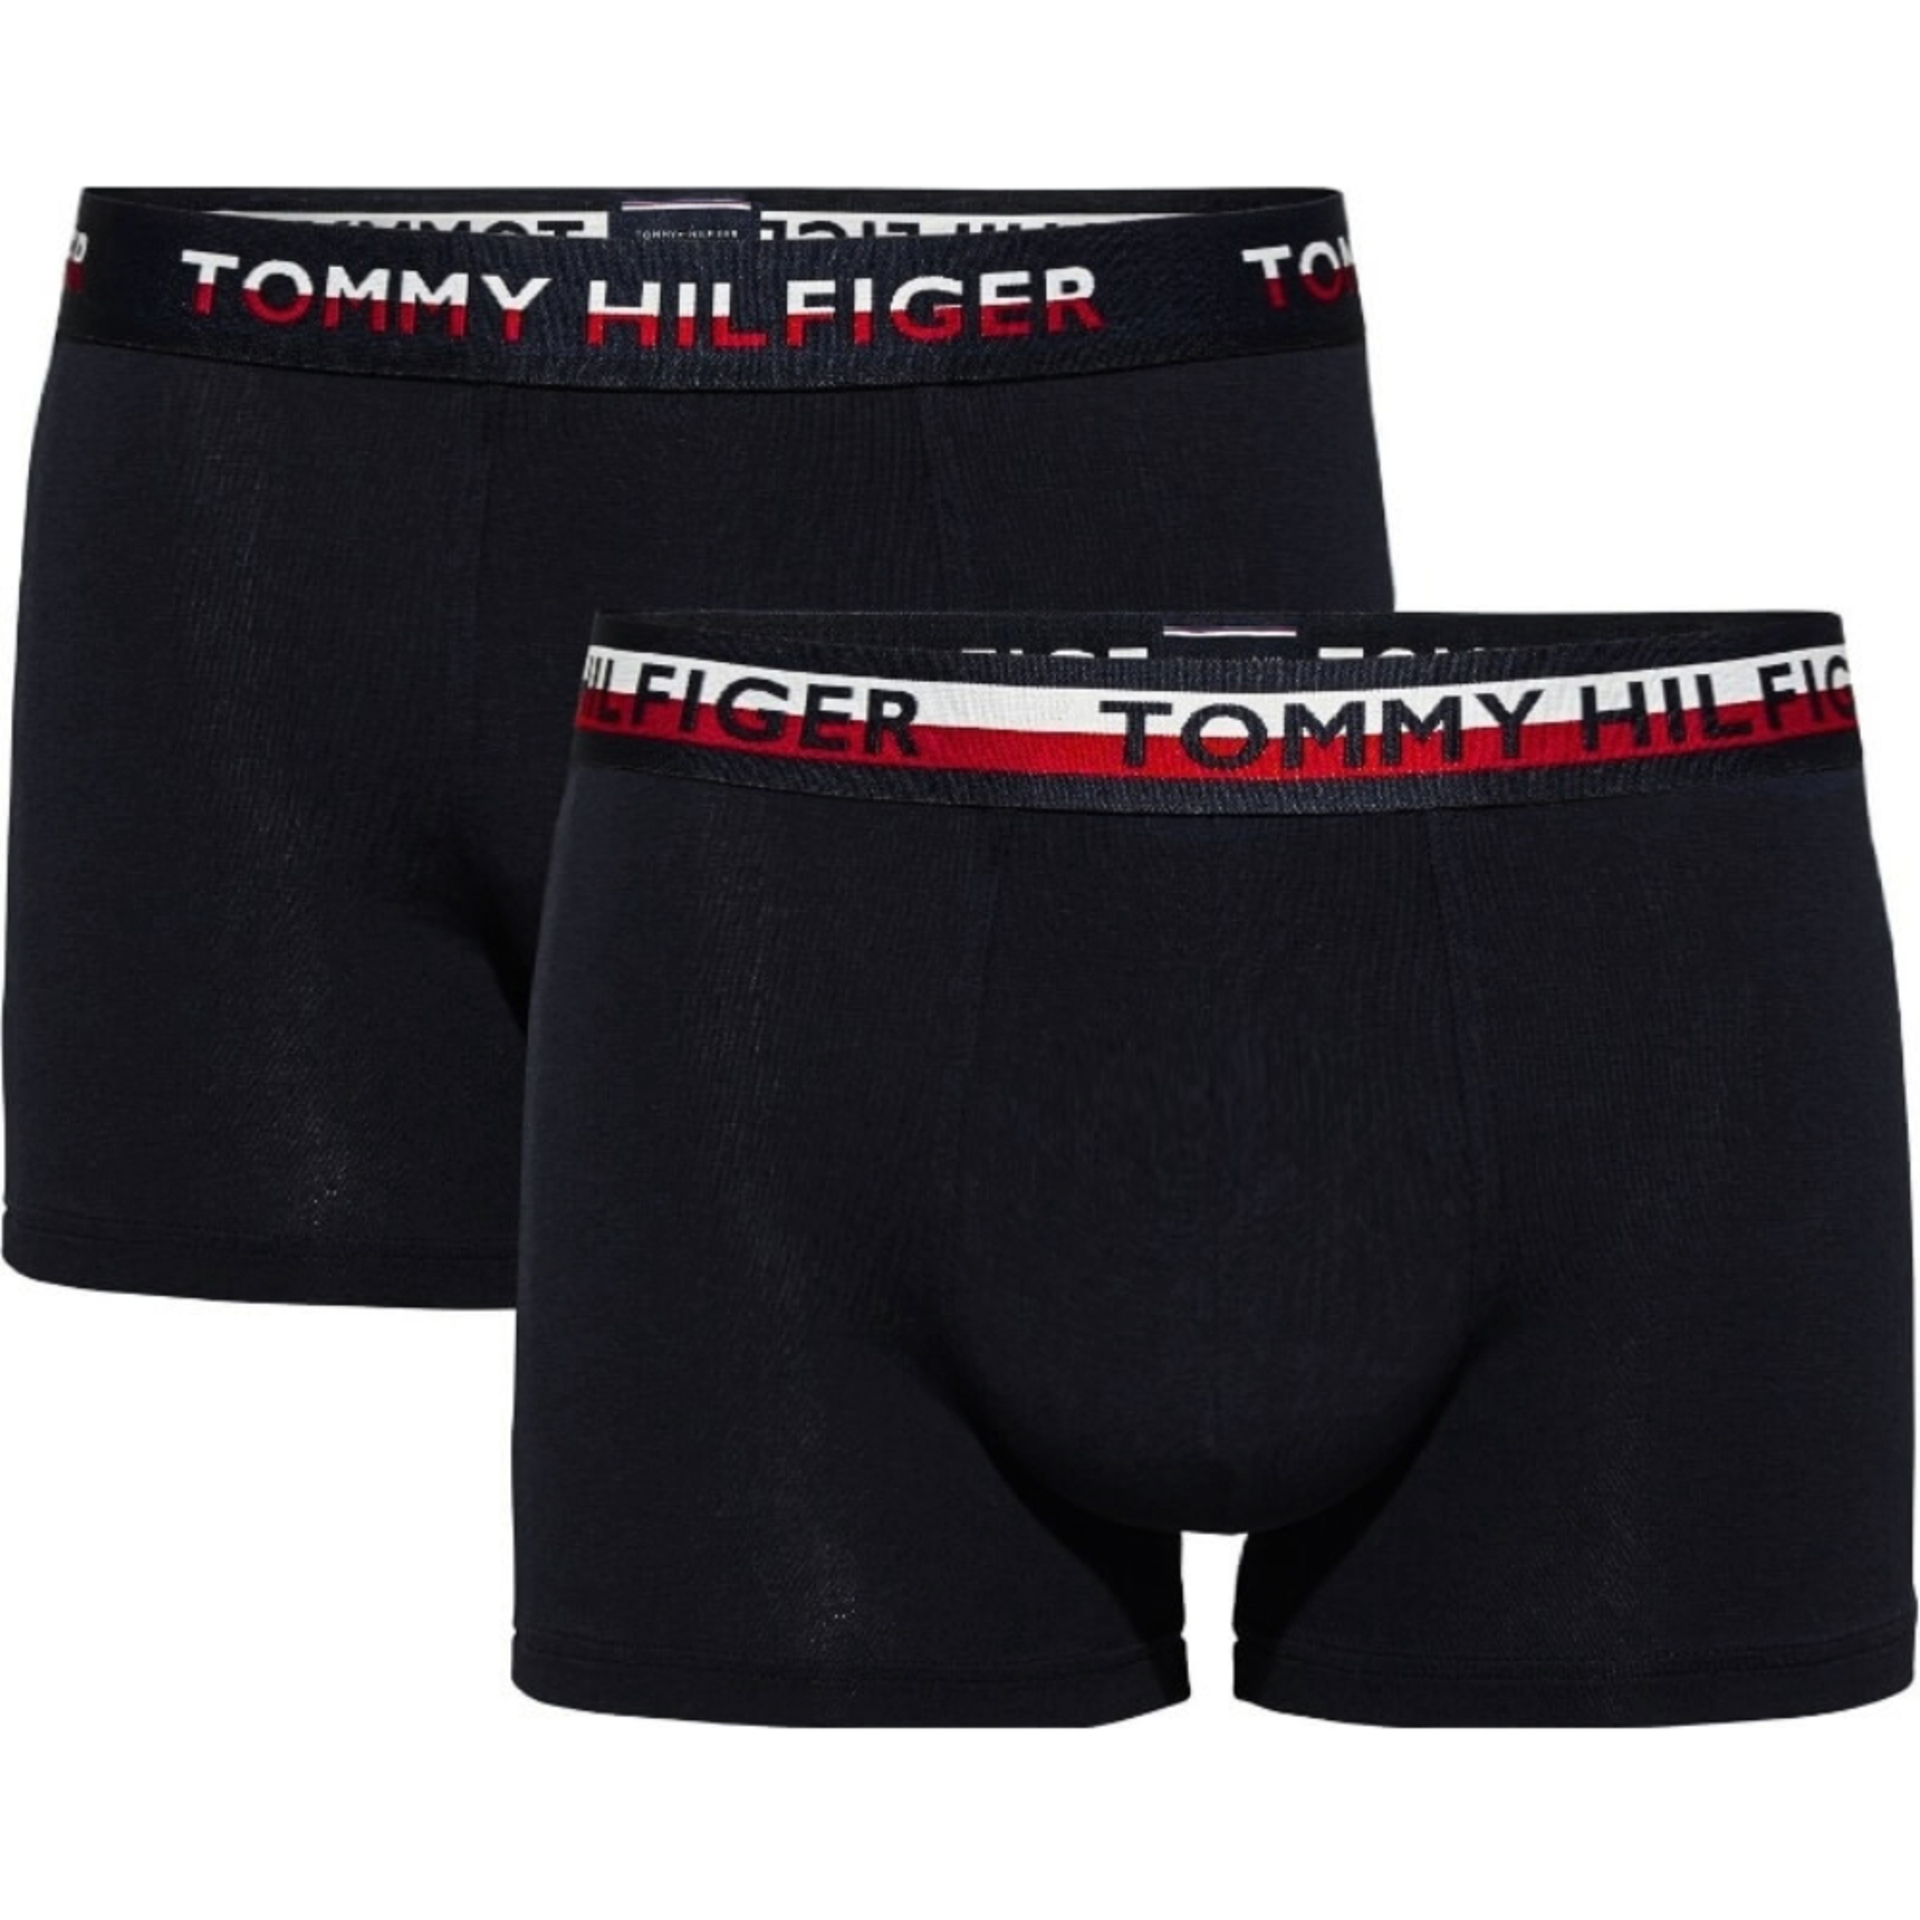 Tommy Hilfiger pánské černé boxerky 2pack - S (990)